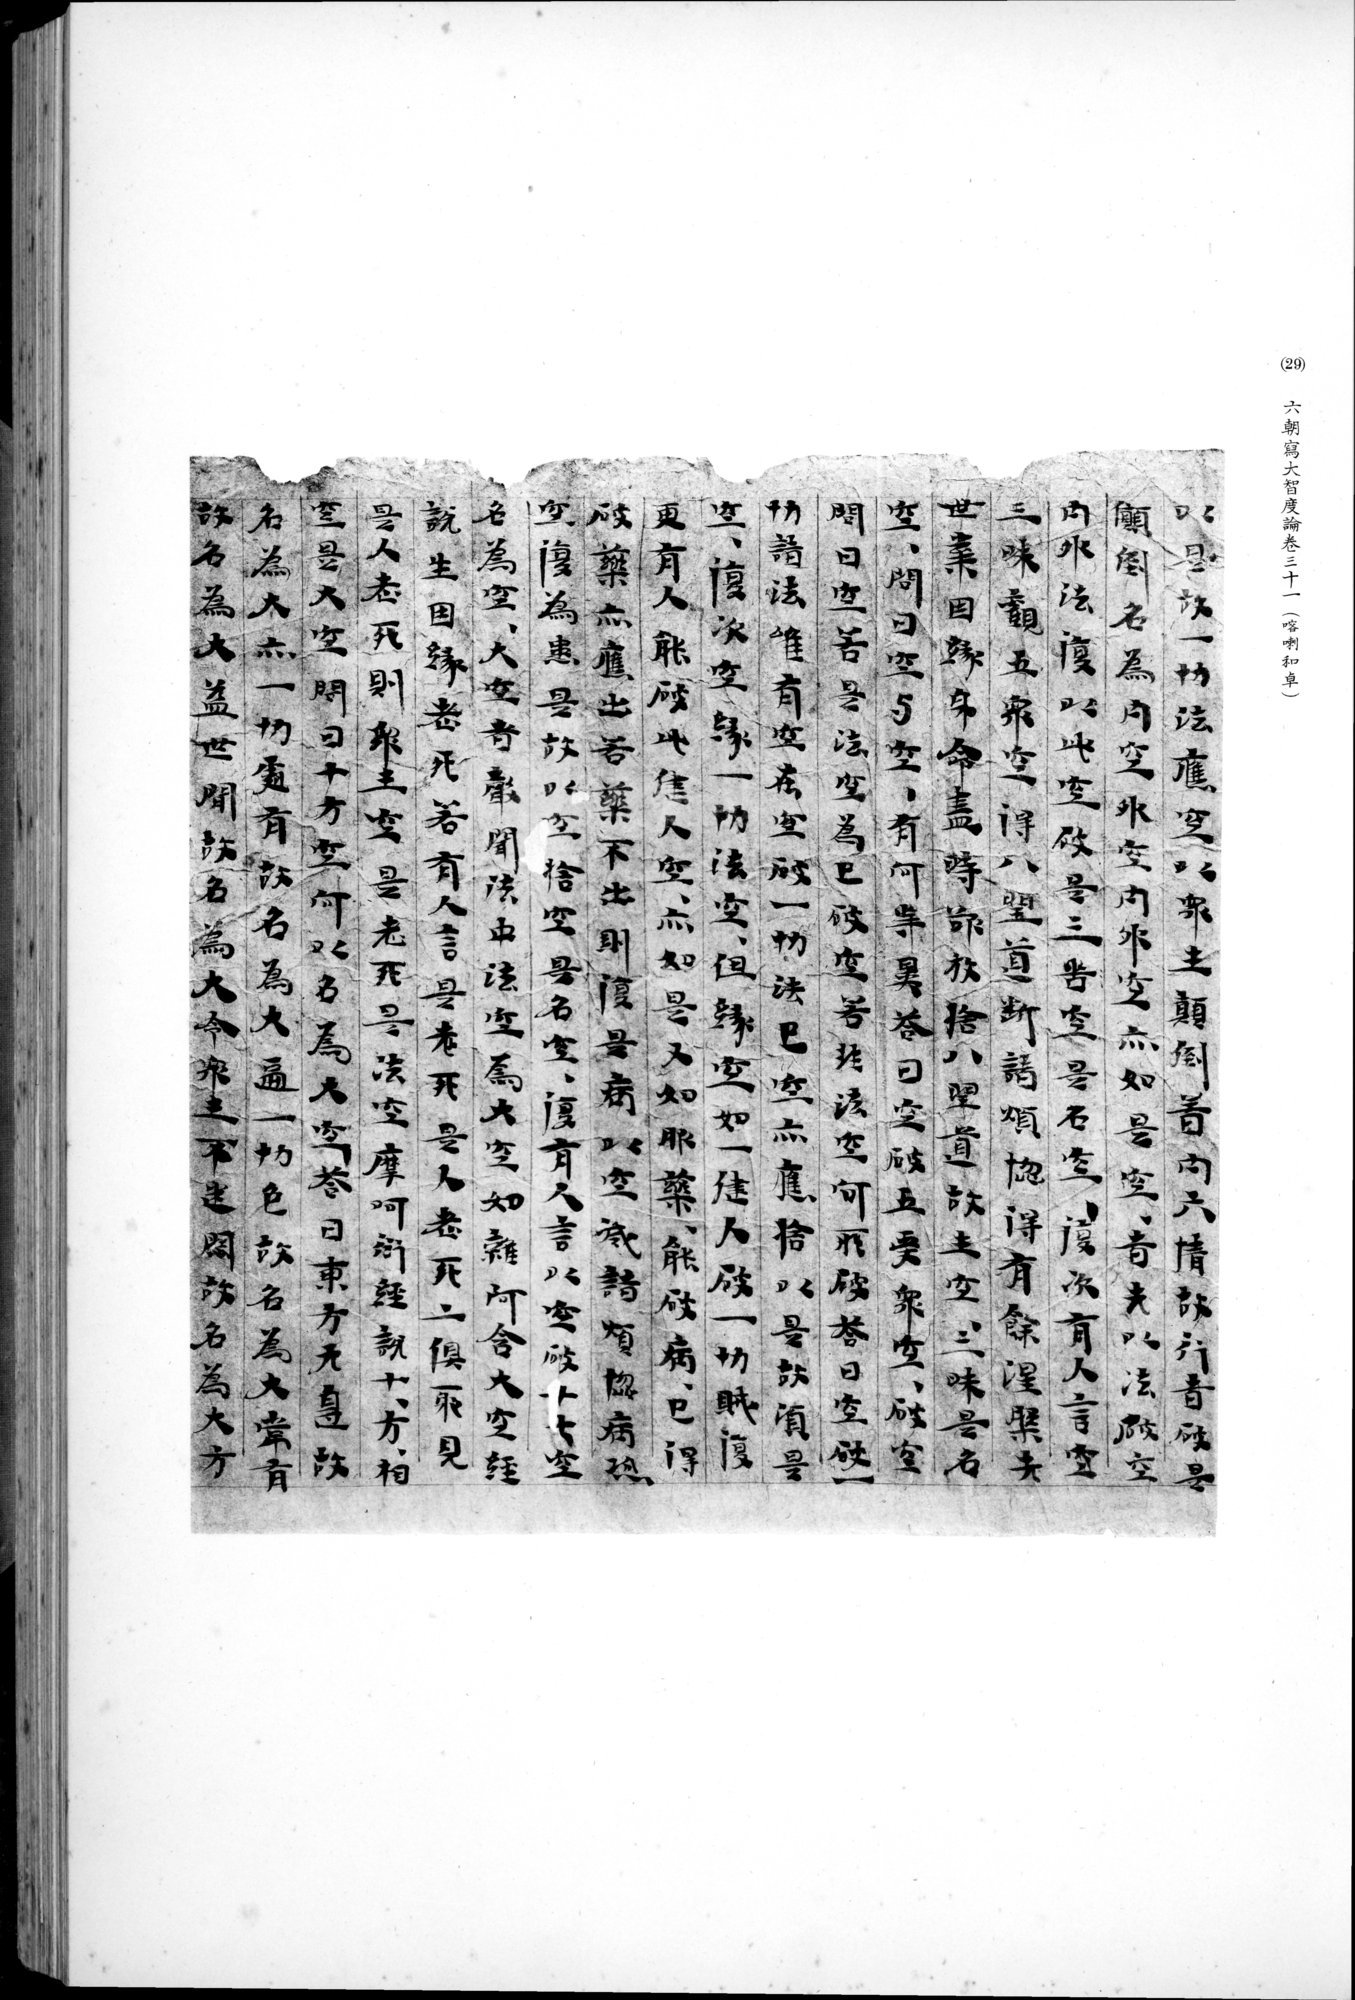 西域考古図譜 : vol.2 / 73 ページ（白黒高解像度画像）